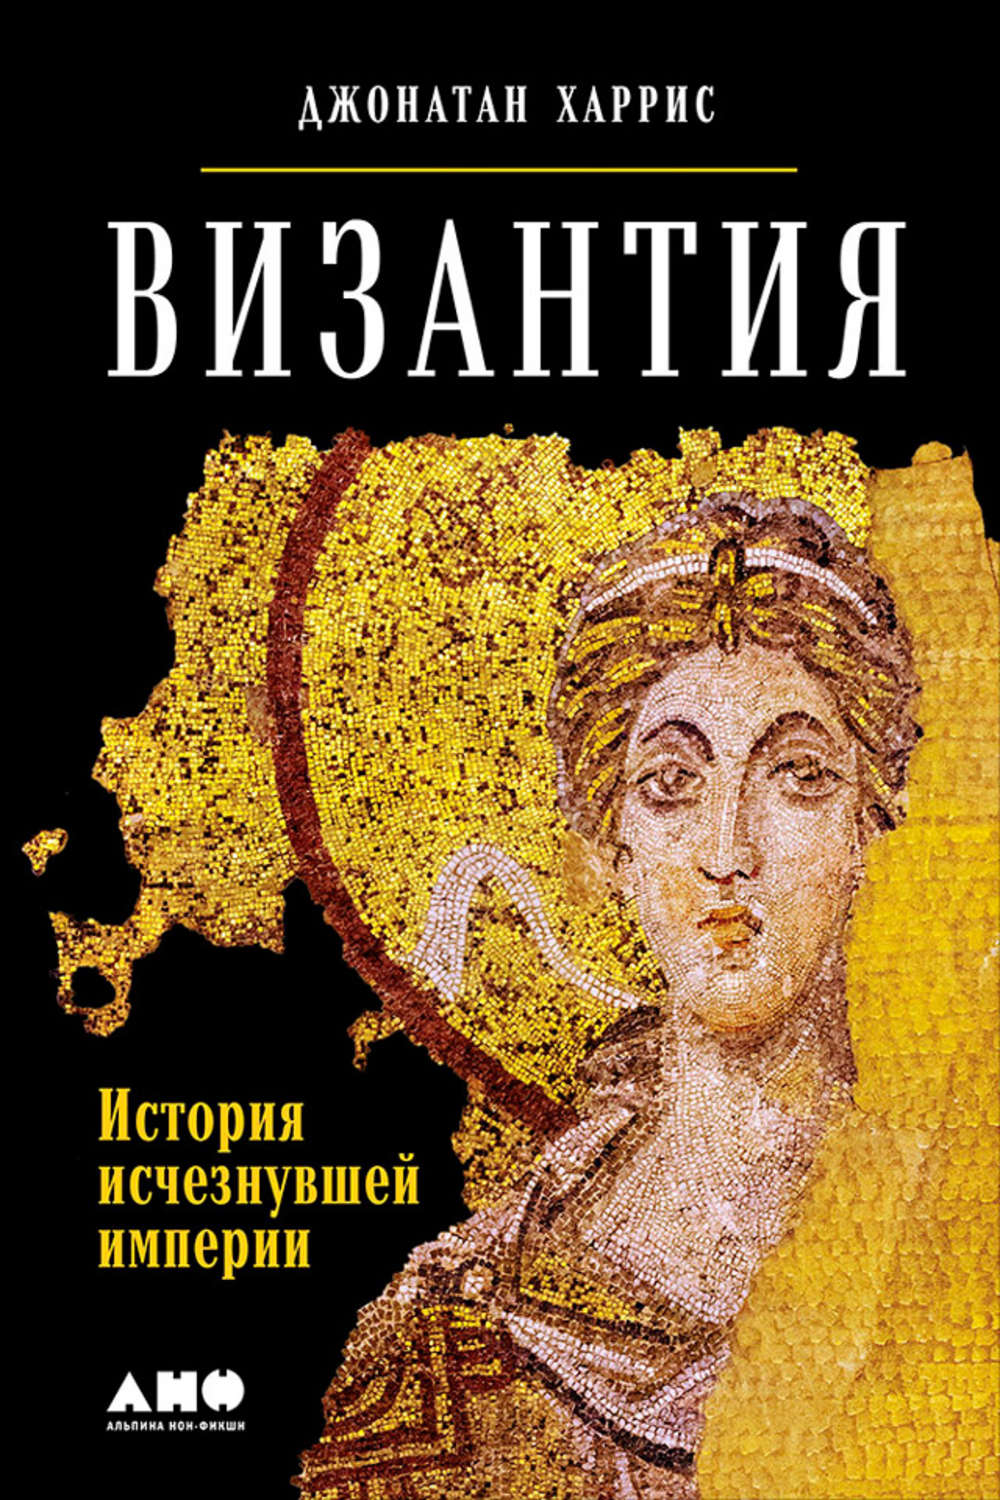 Книги о византии скачать бесплатно без регистрации